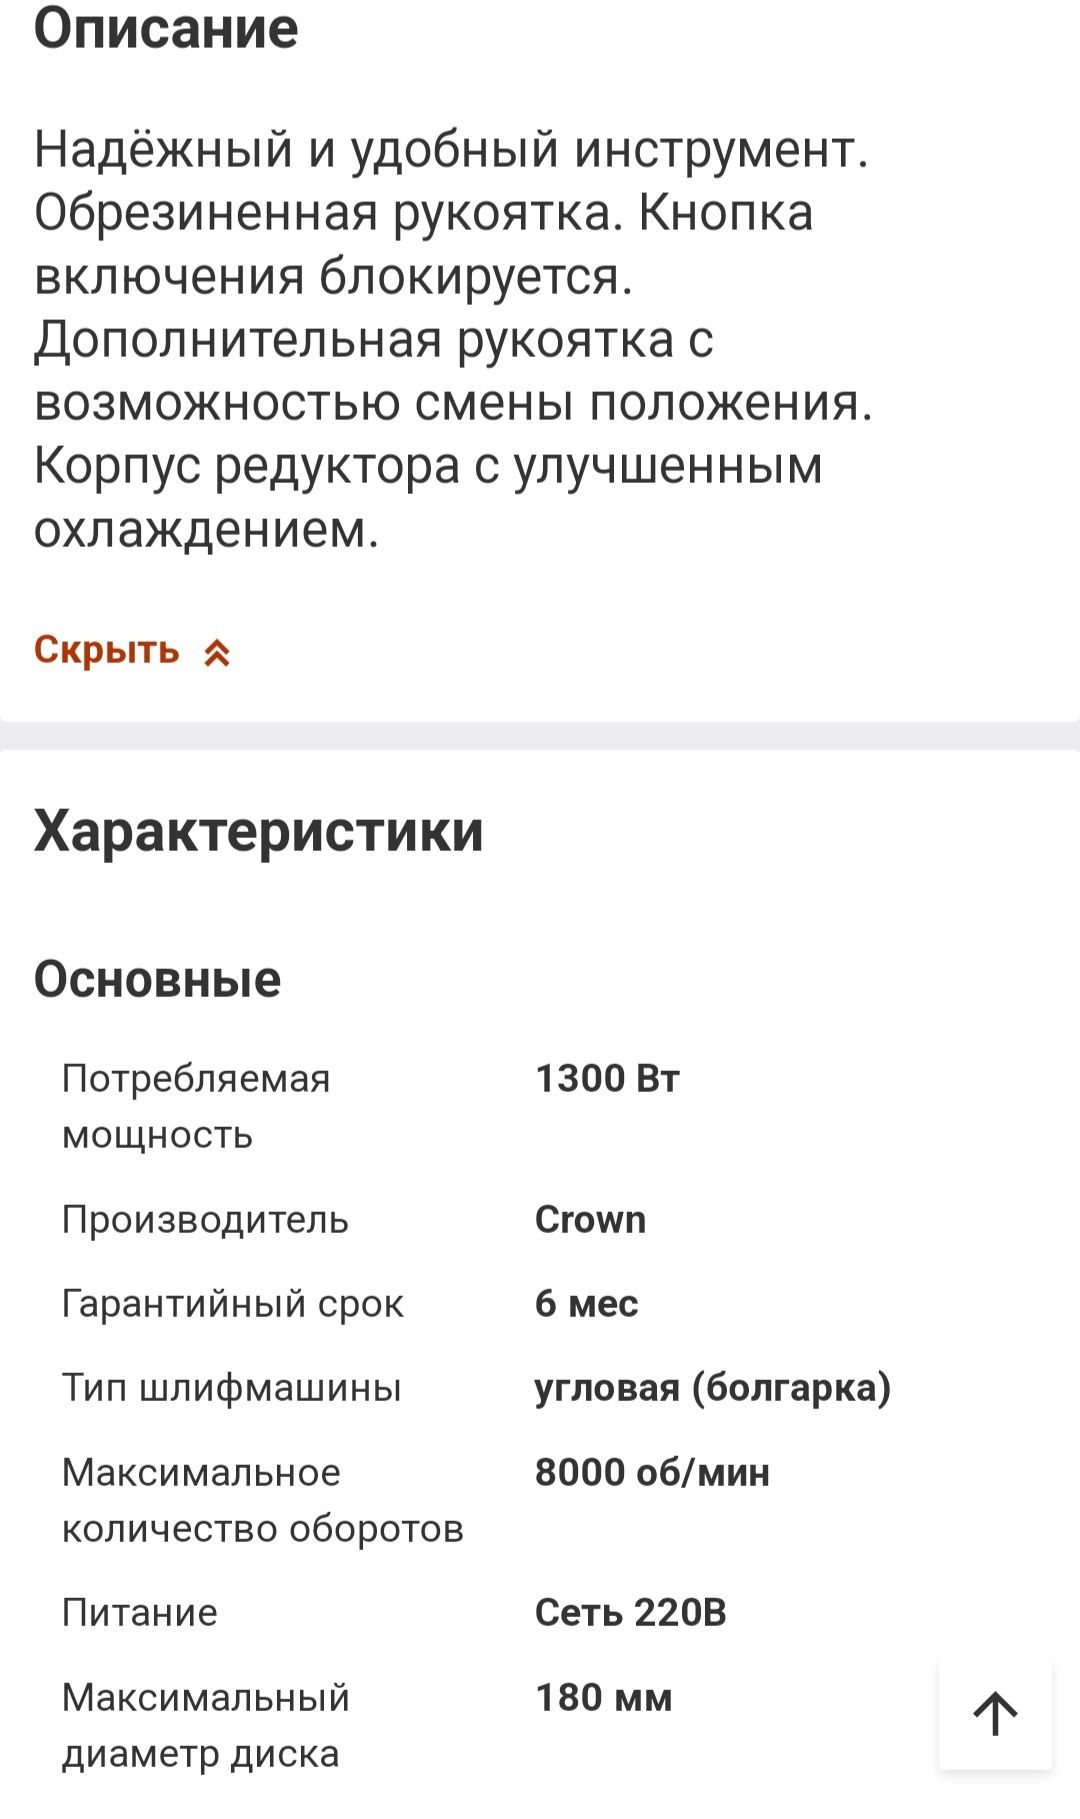 Болгарка Crown CT 13300 Код 1730 Нур ломбард